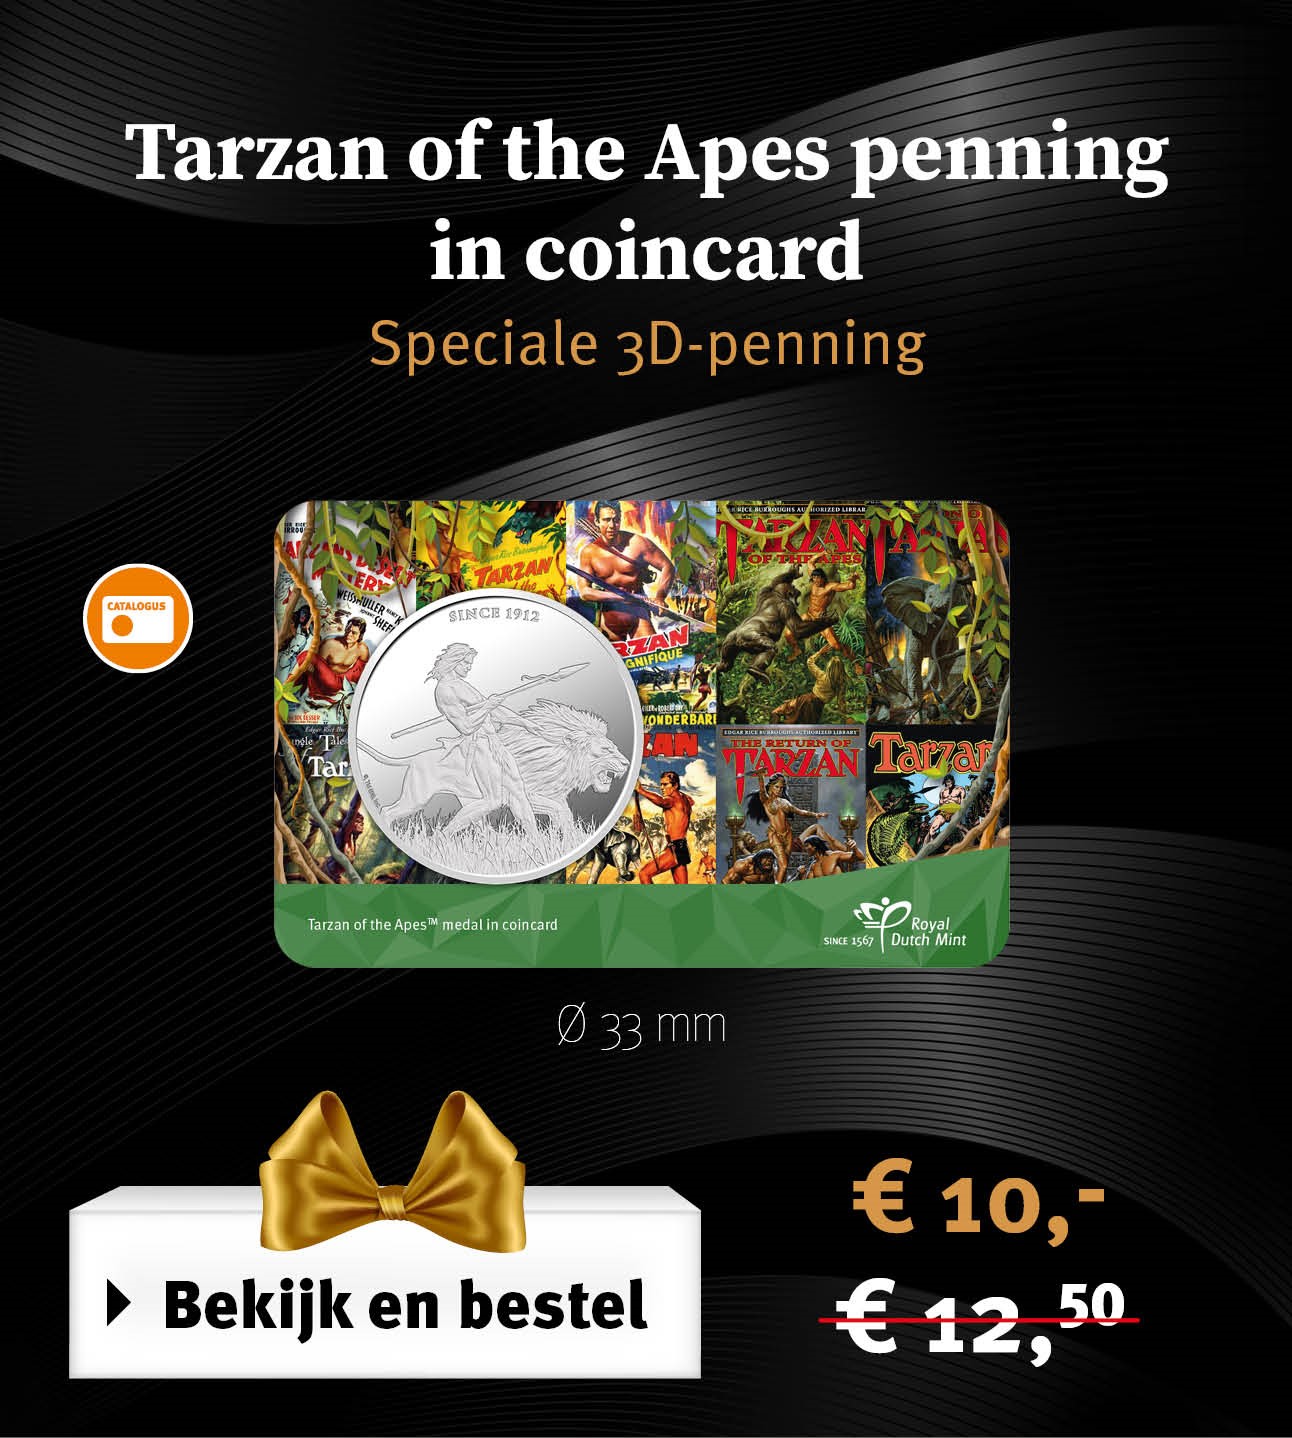 Bekijk en bestel: Tarzan of the Apes penning in coincard